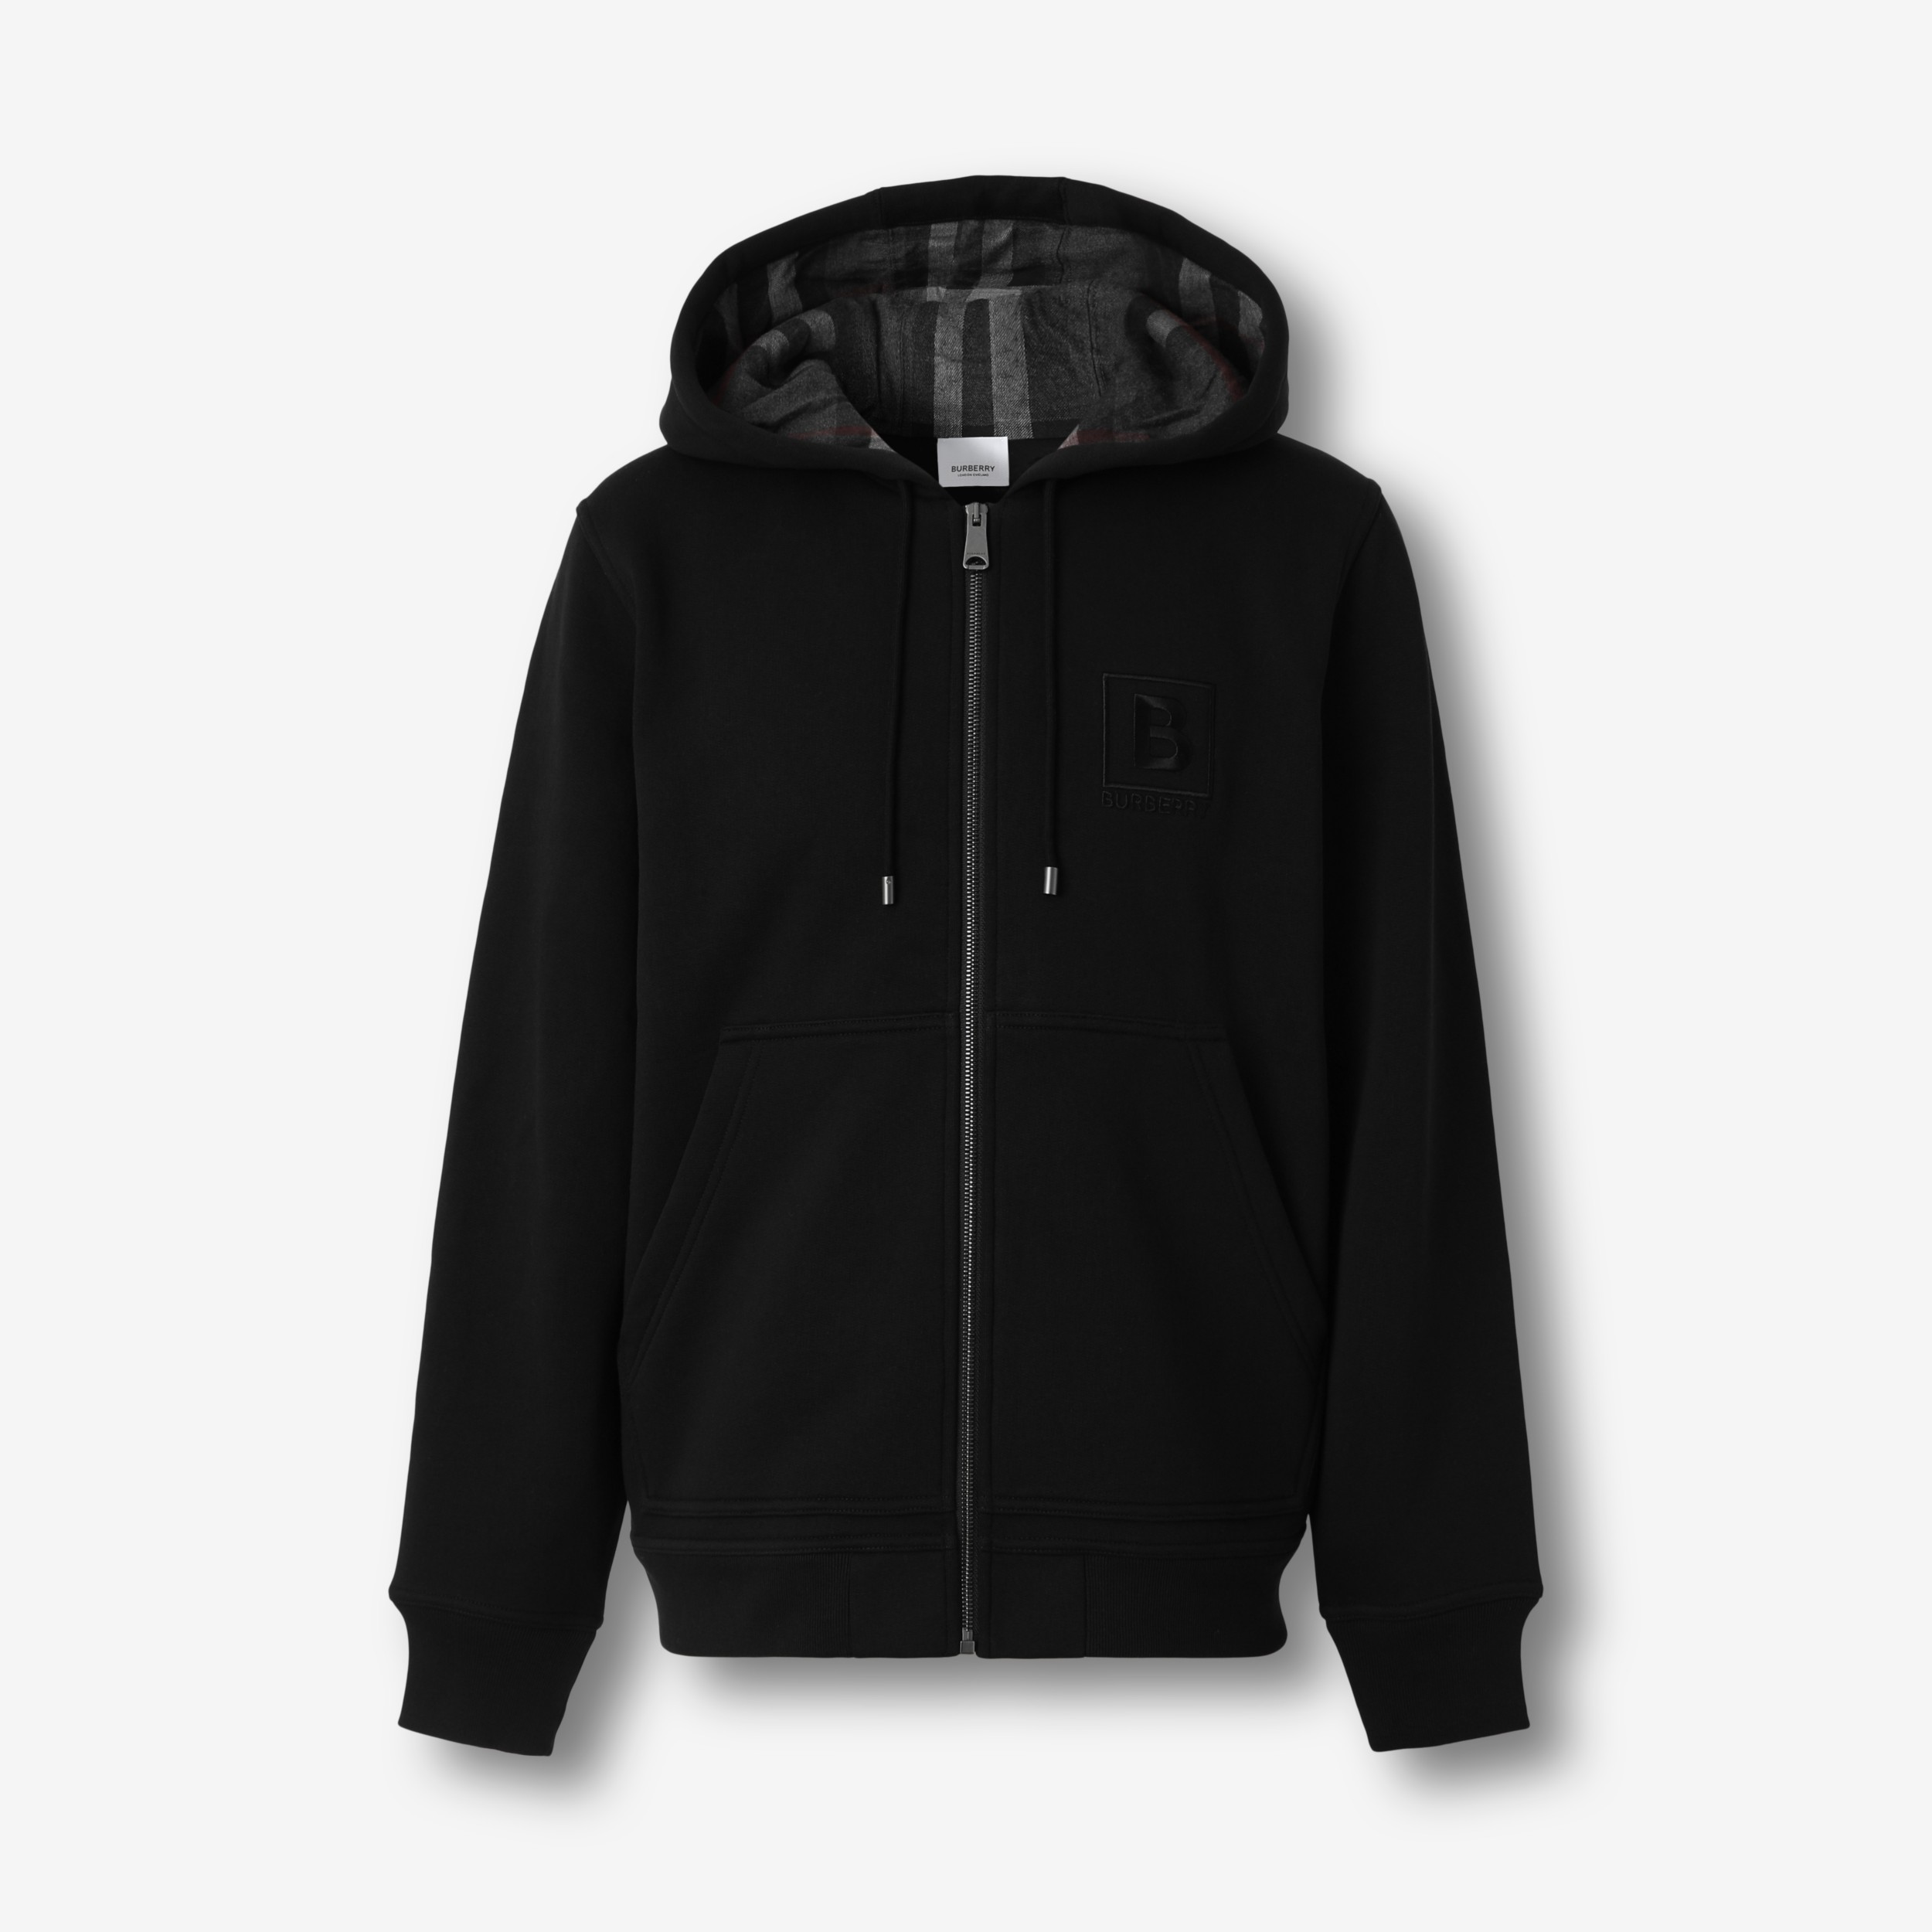 Arriba 36+ imagen burberry zip up hoodie black